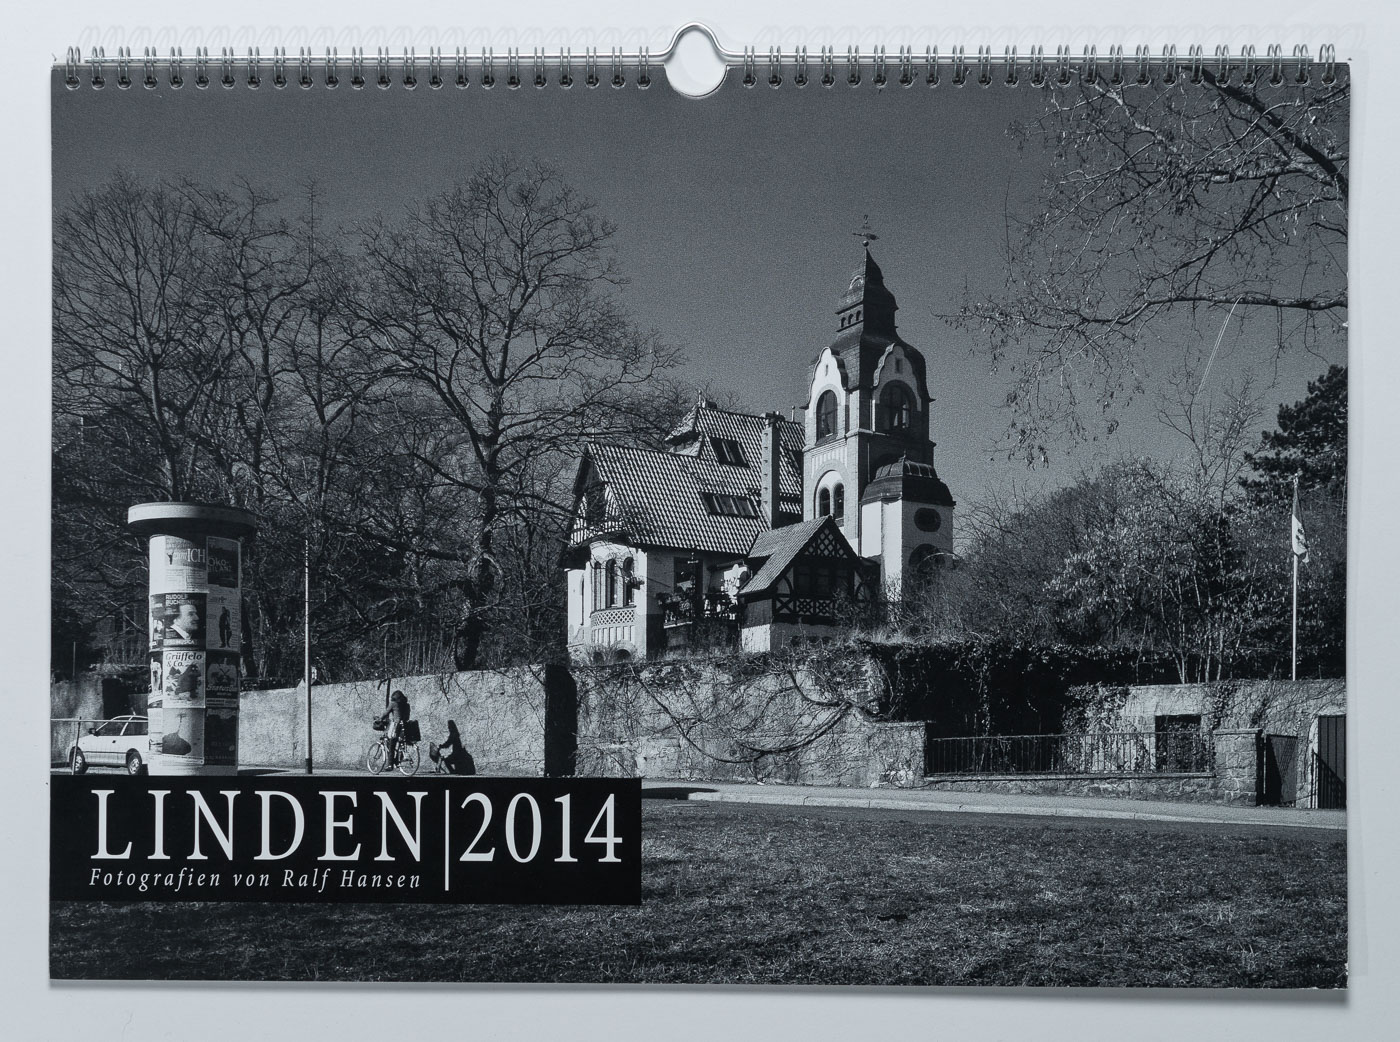 Lindenkalender LINDEN 2014